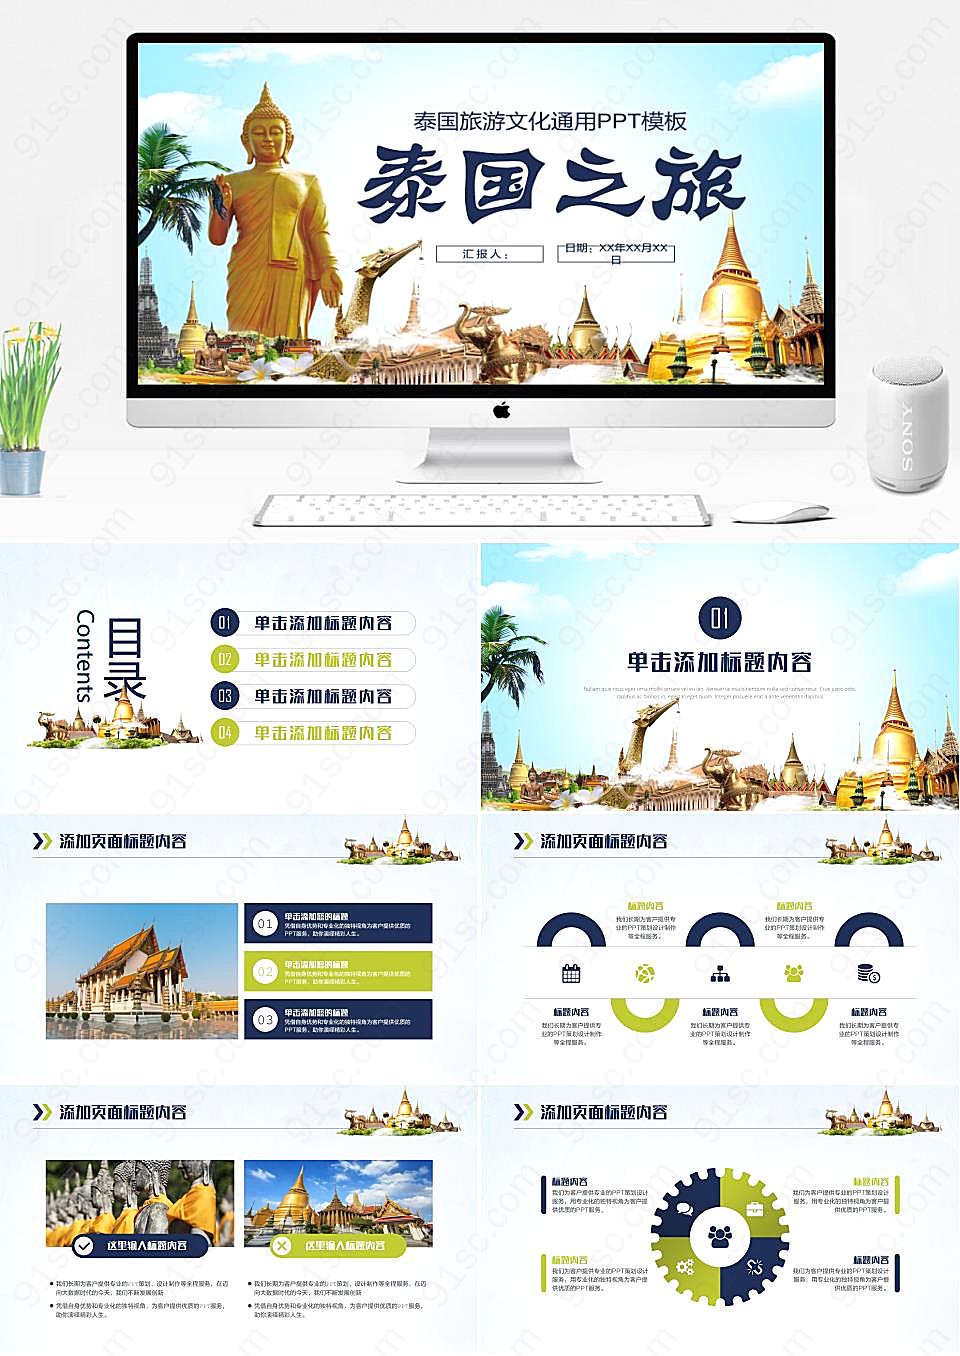 简洁美观泰国旅游文化的创意思路PPT模板旅游旅行下载